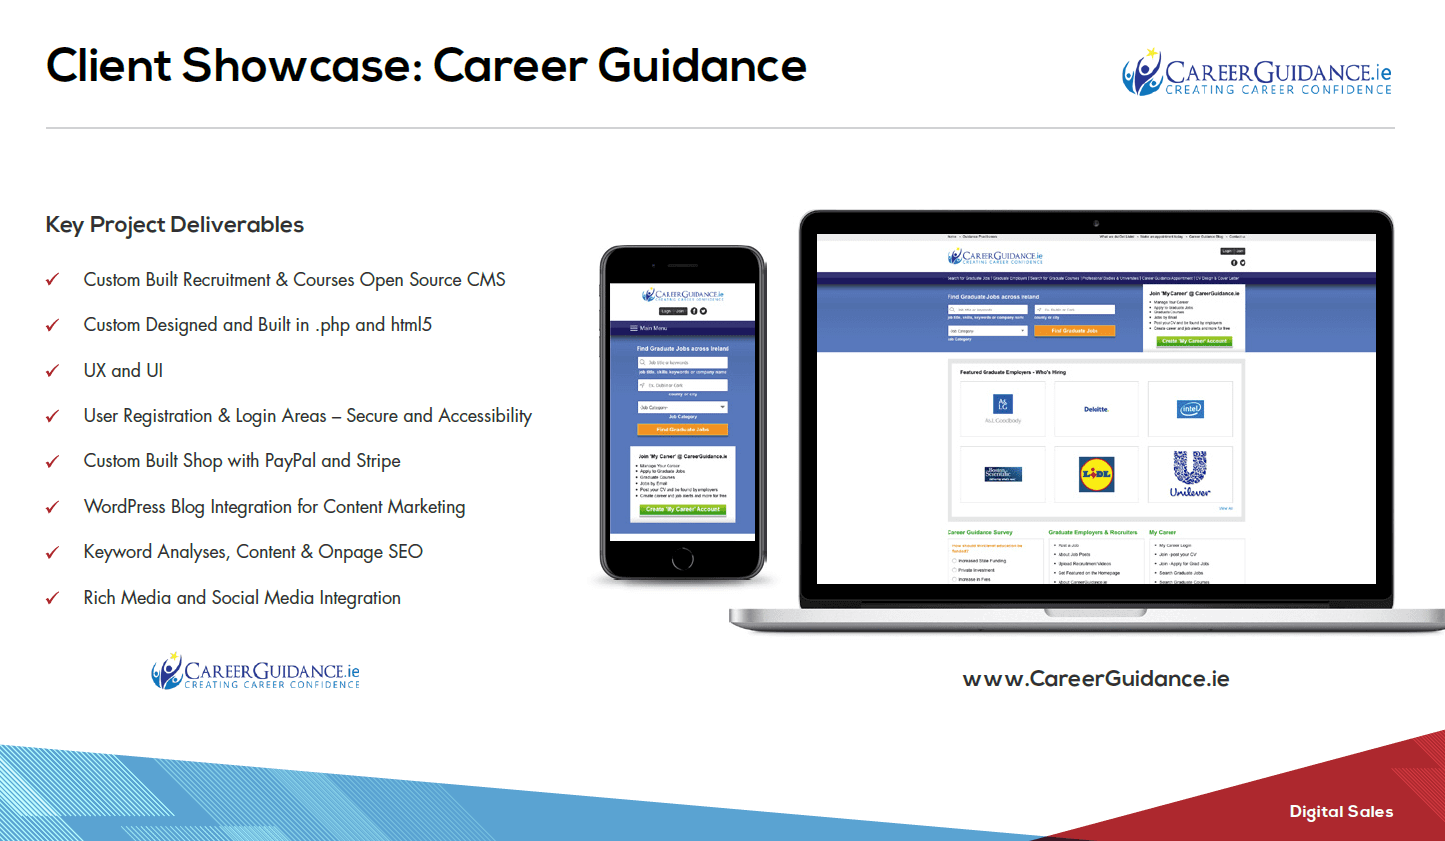 www.CareerGuidance.ie